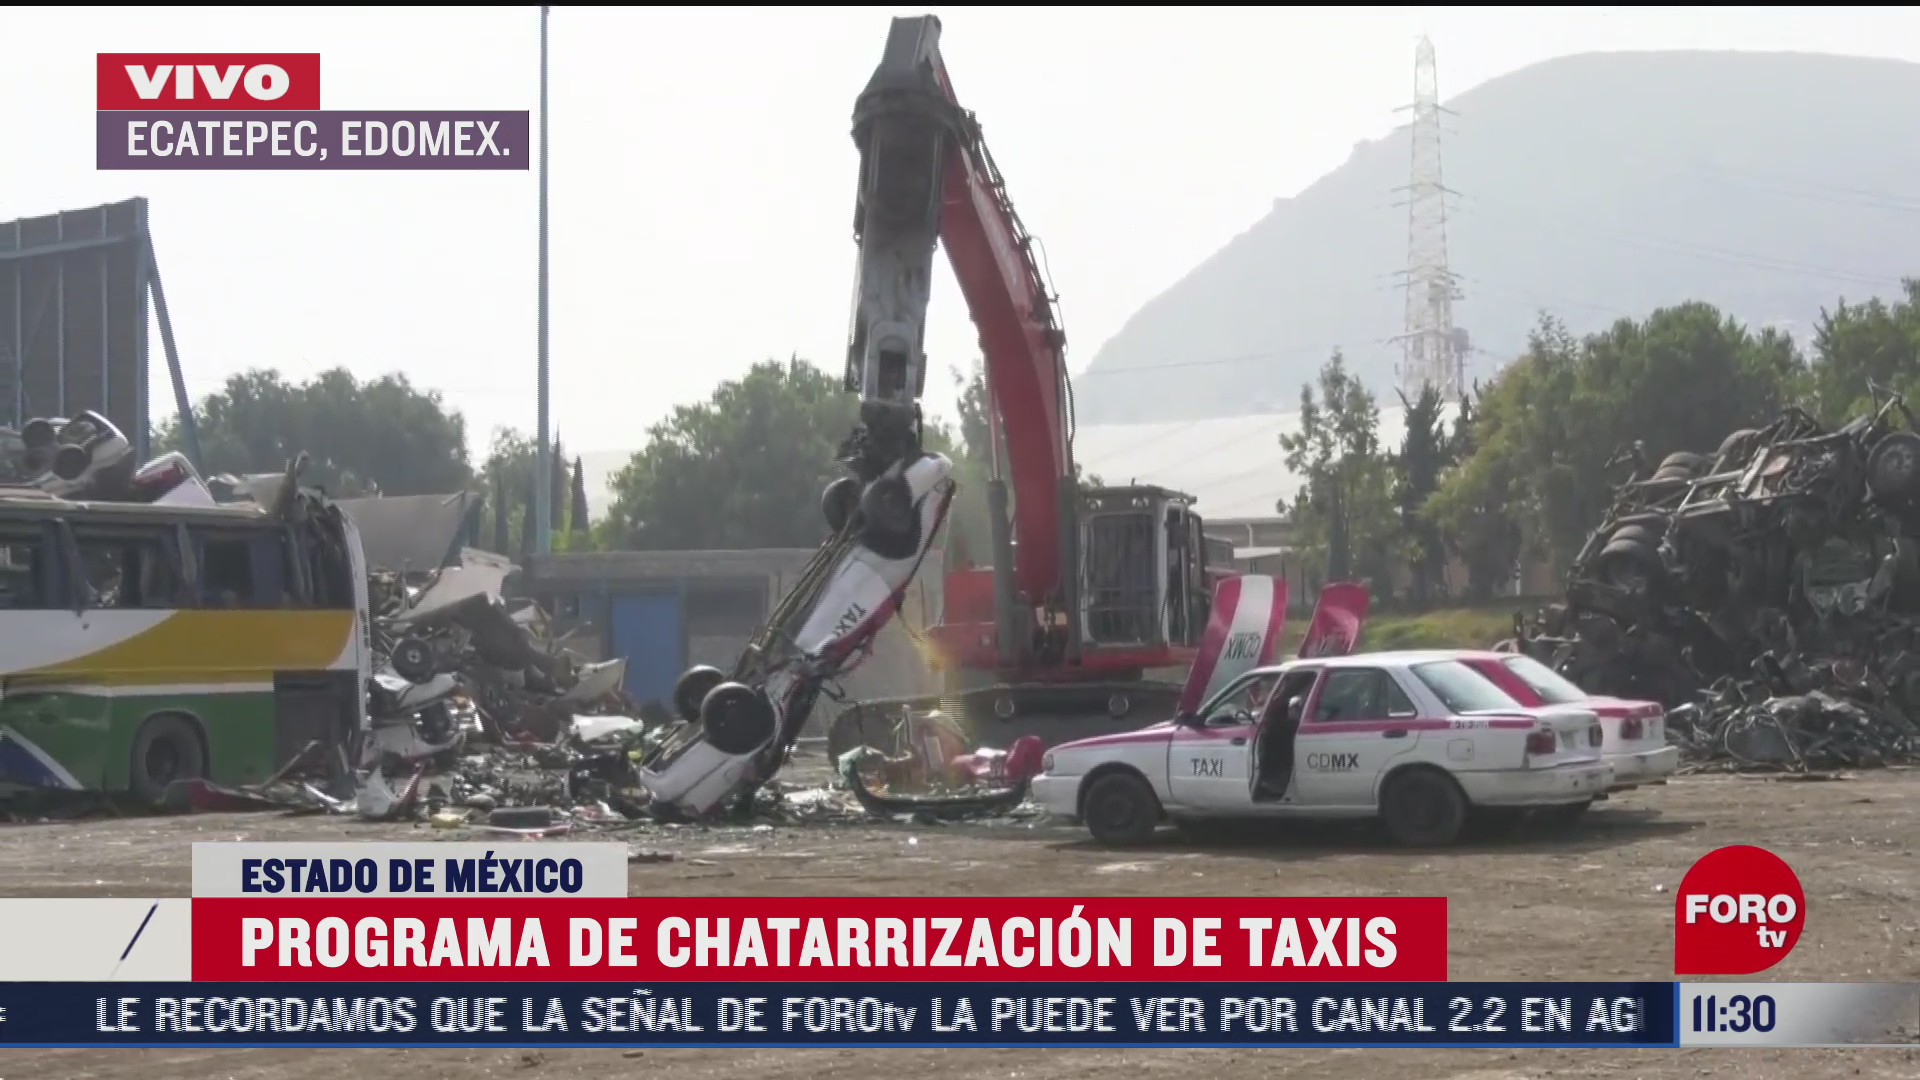 programa de chatarrizacion de taxis en ecatepec edomex